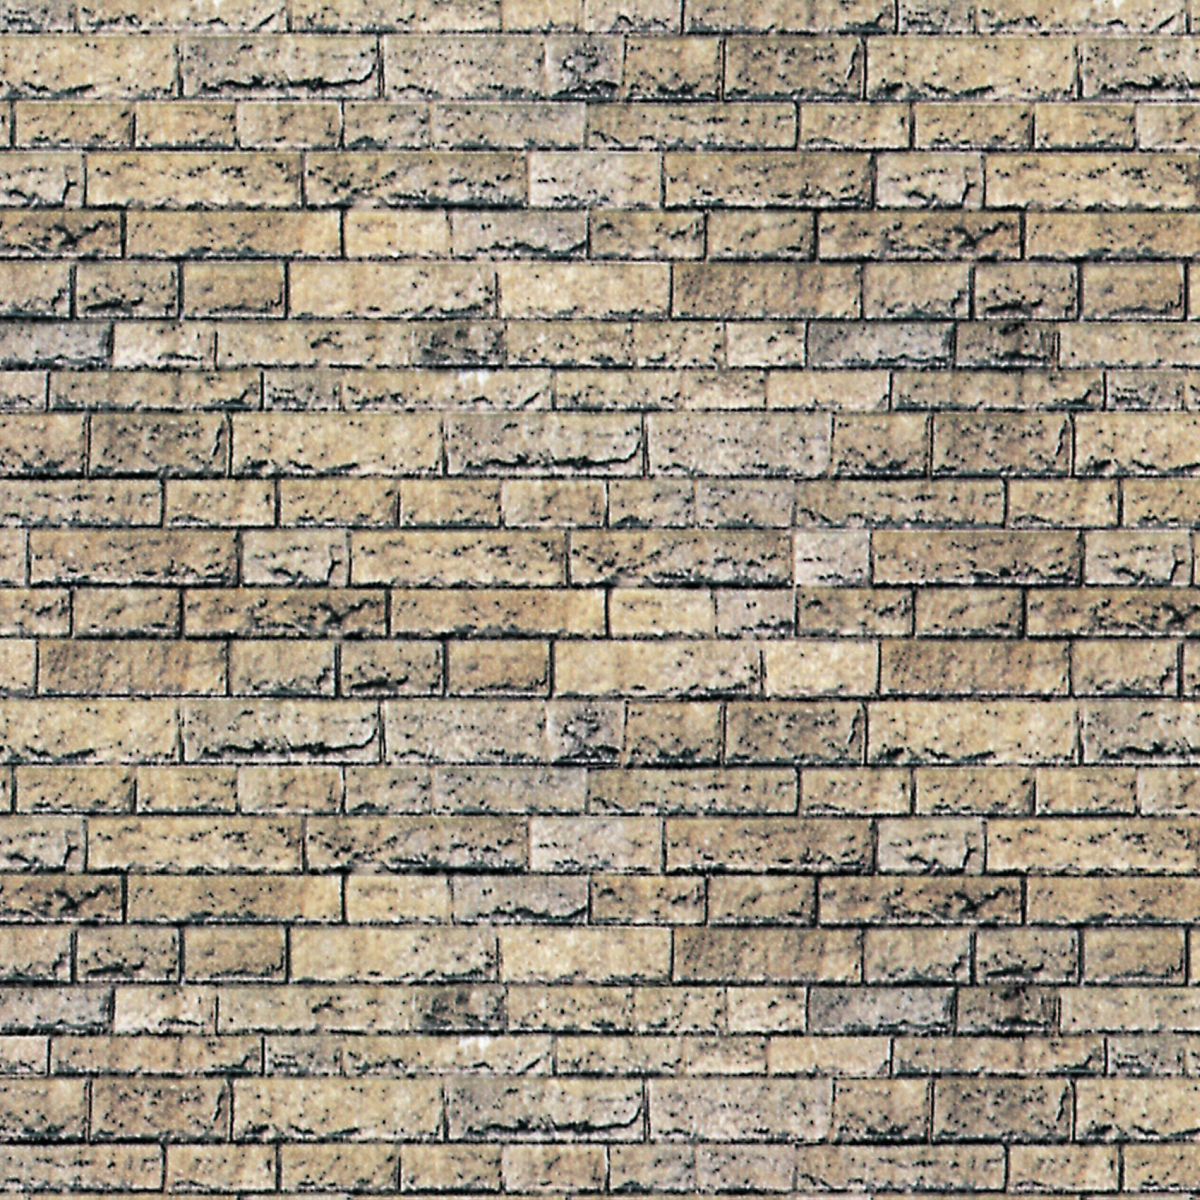 Vollmer 46038 - Karton-Mauerplatte 'Basalt', 25x12,5cm